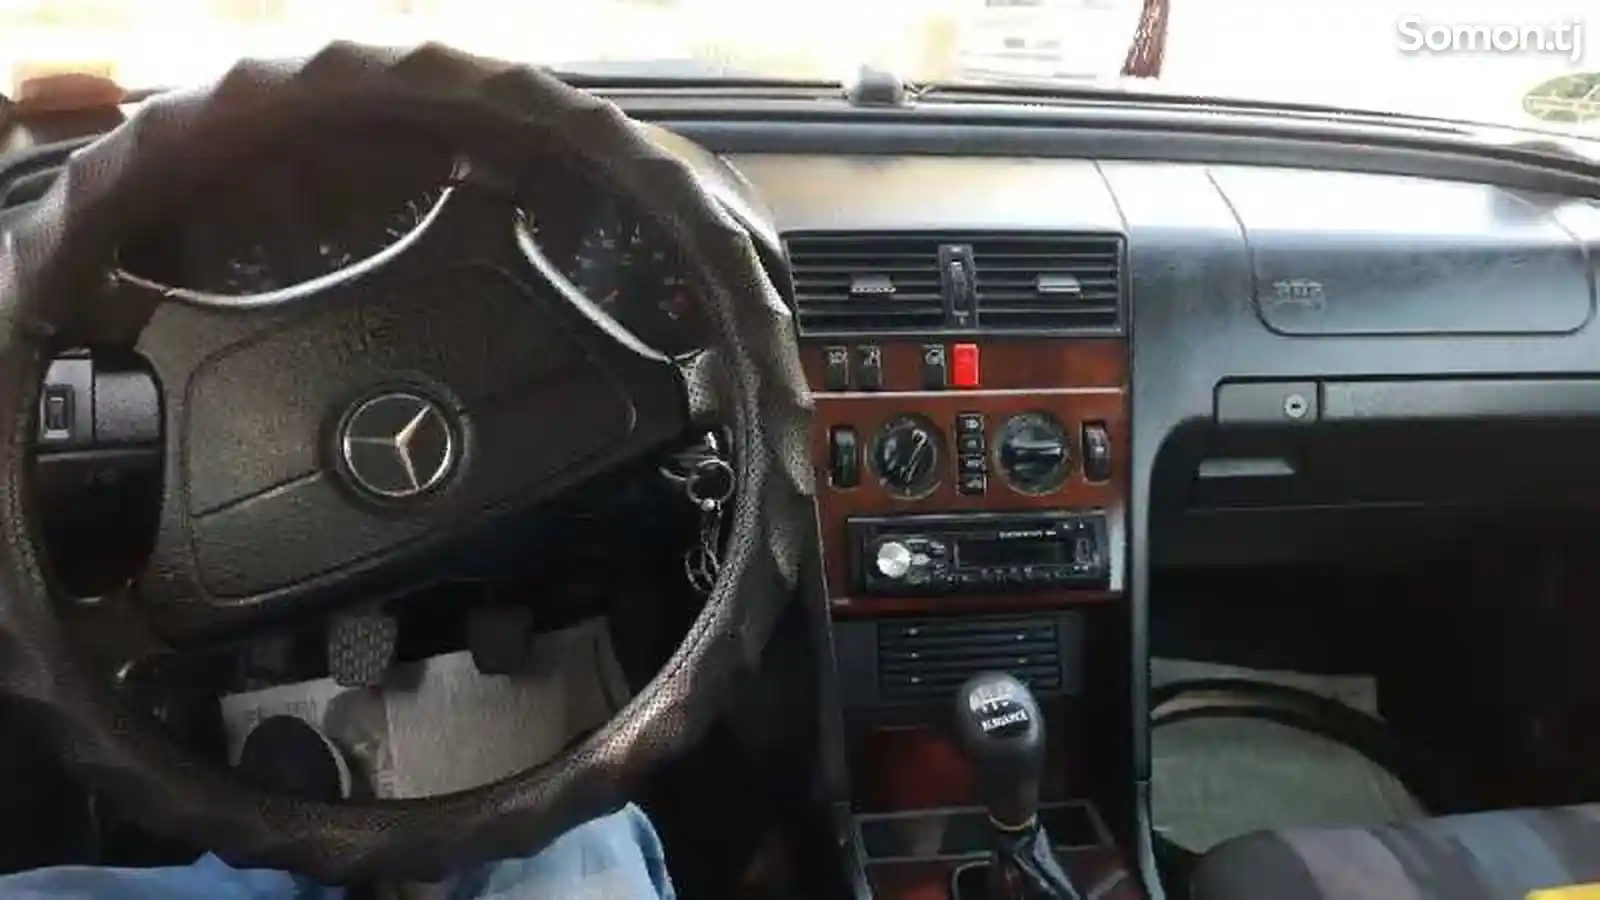 Mercedes-Benz C class, 1994-1